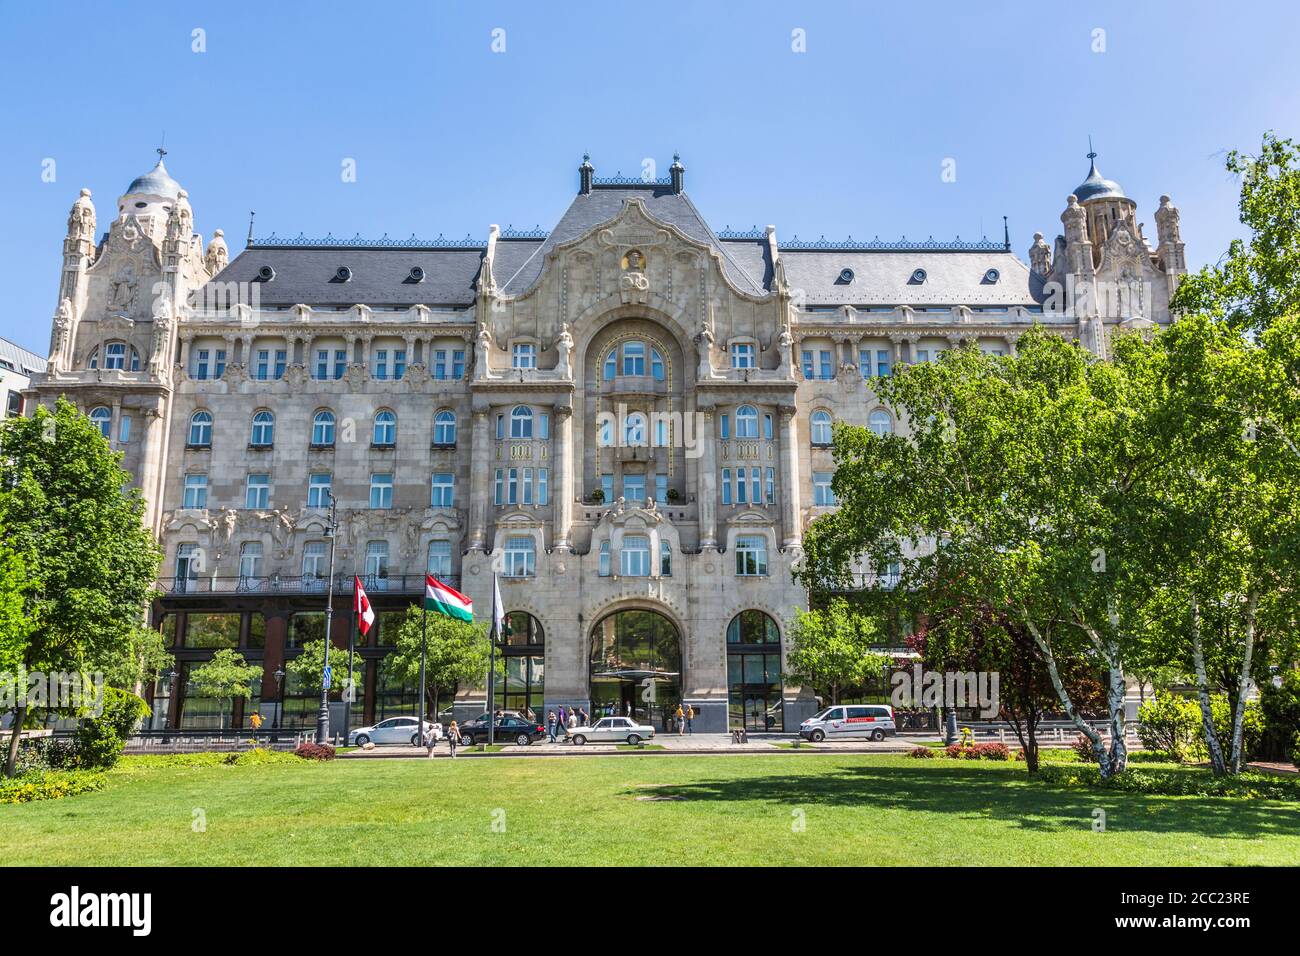 Hungary, Budapest, View of Four Seasons Hotel Gresham Palace Budapest Stock Photo